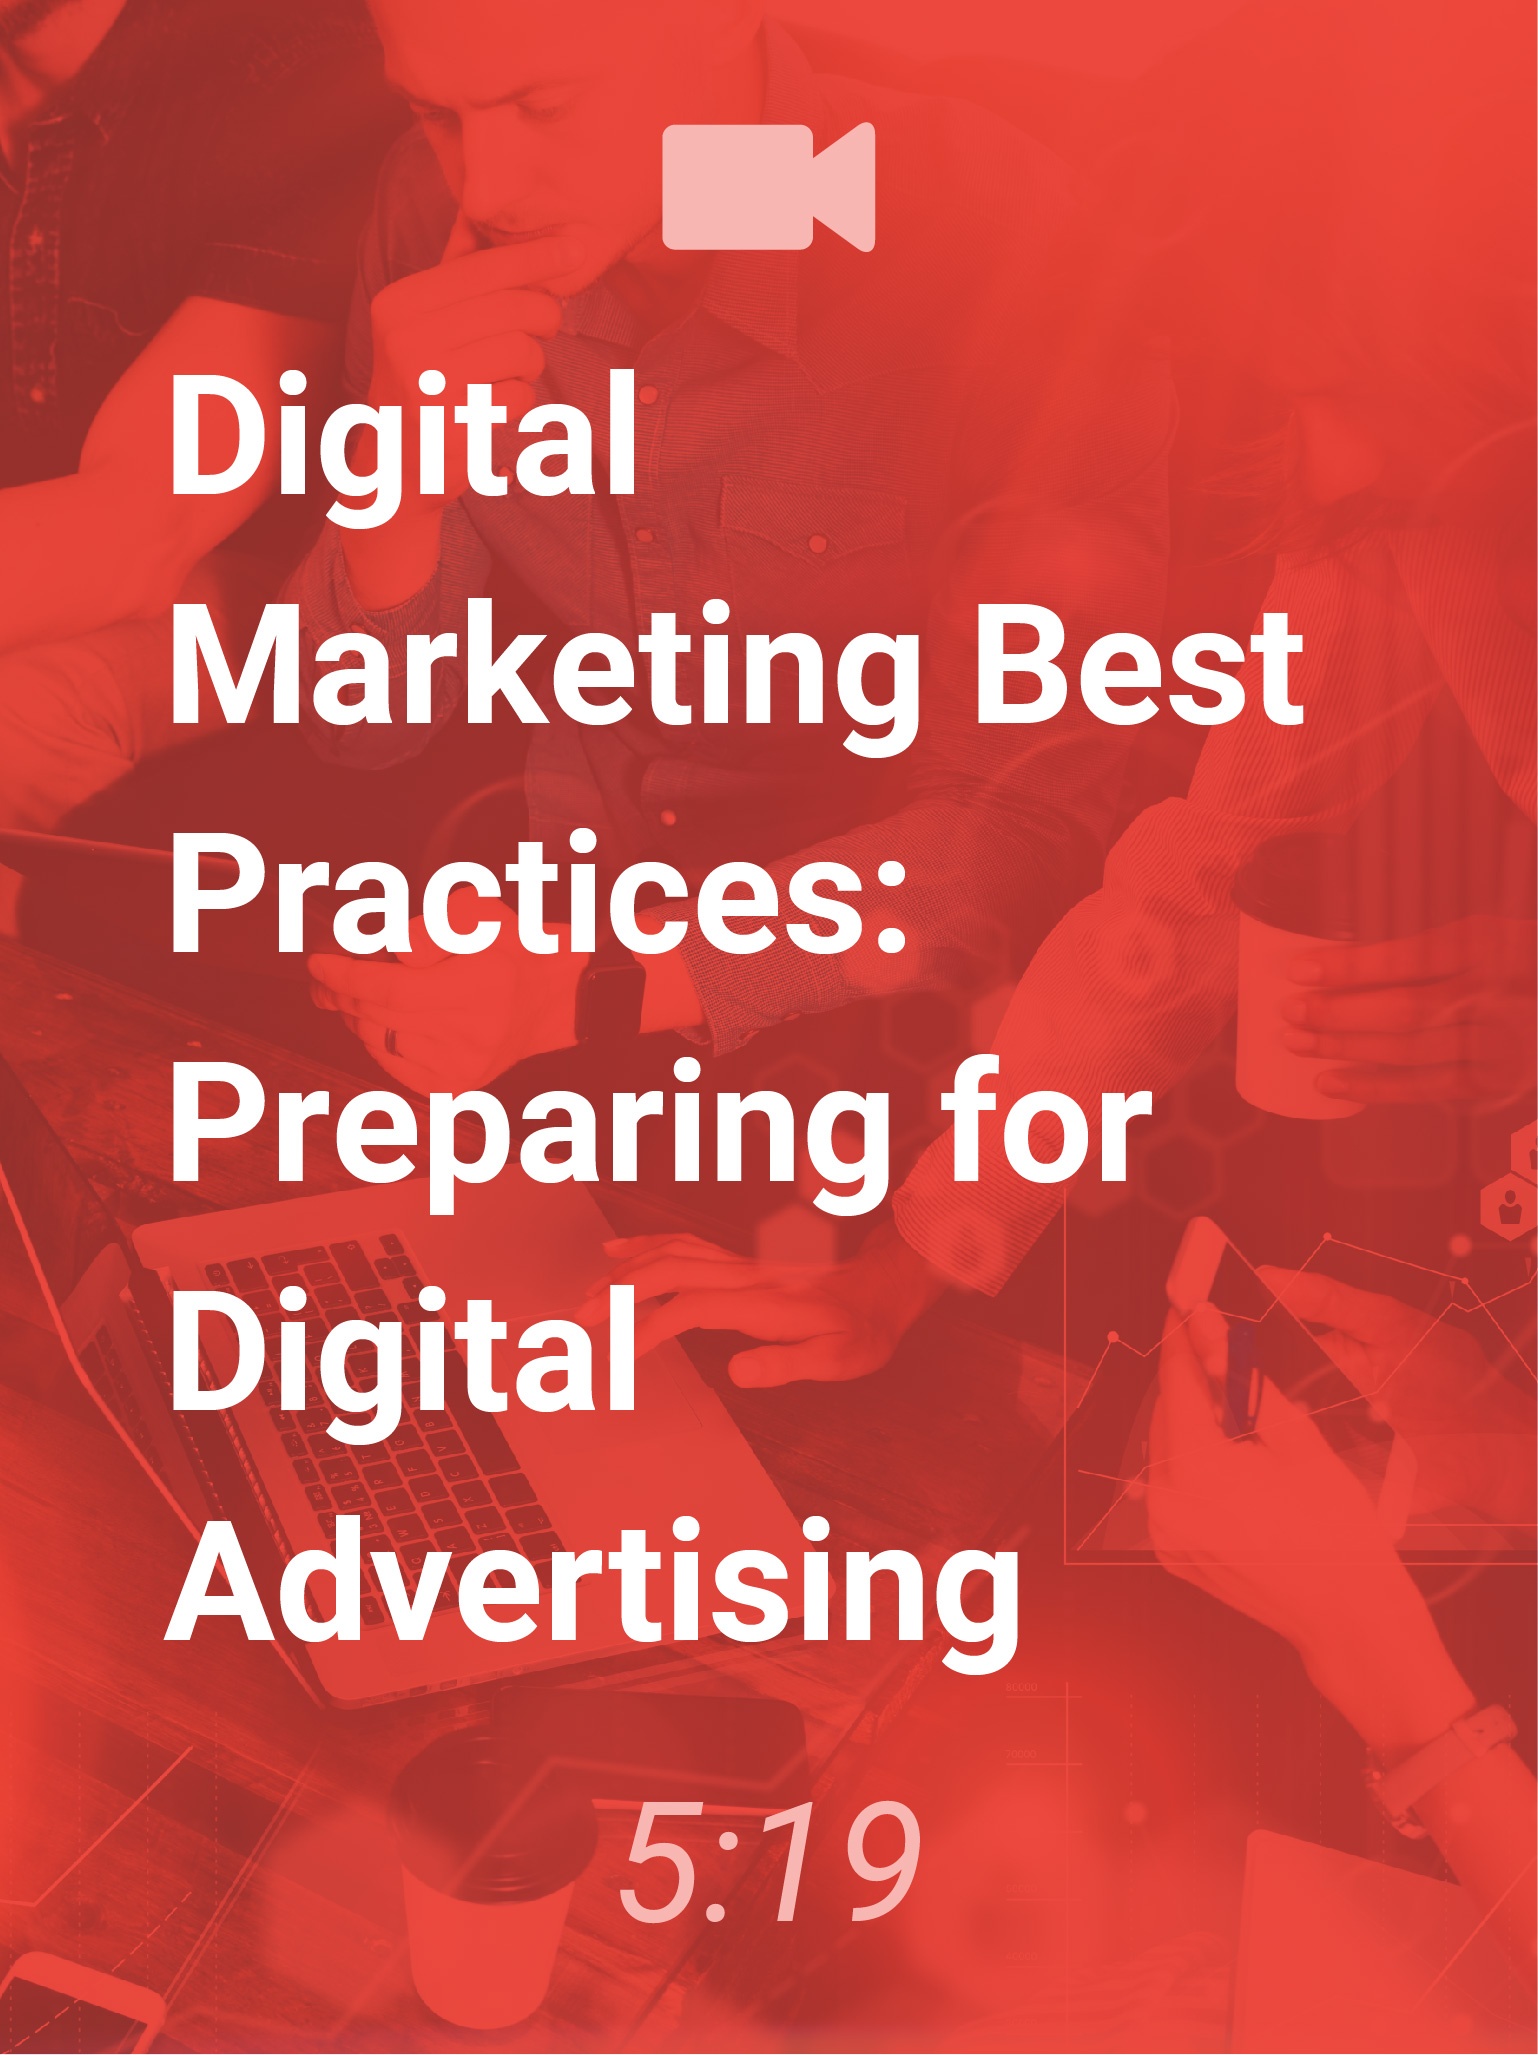 Preparing for digital advertising